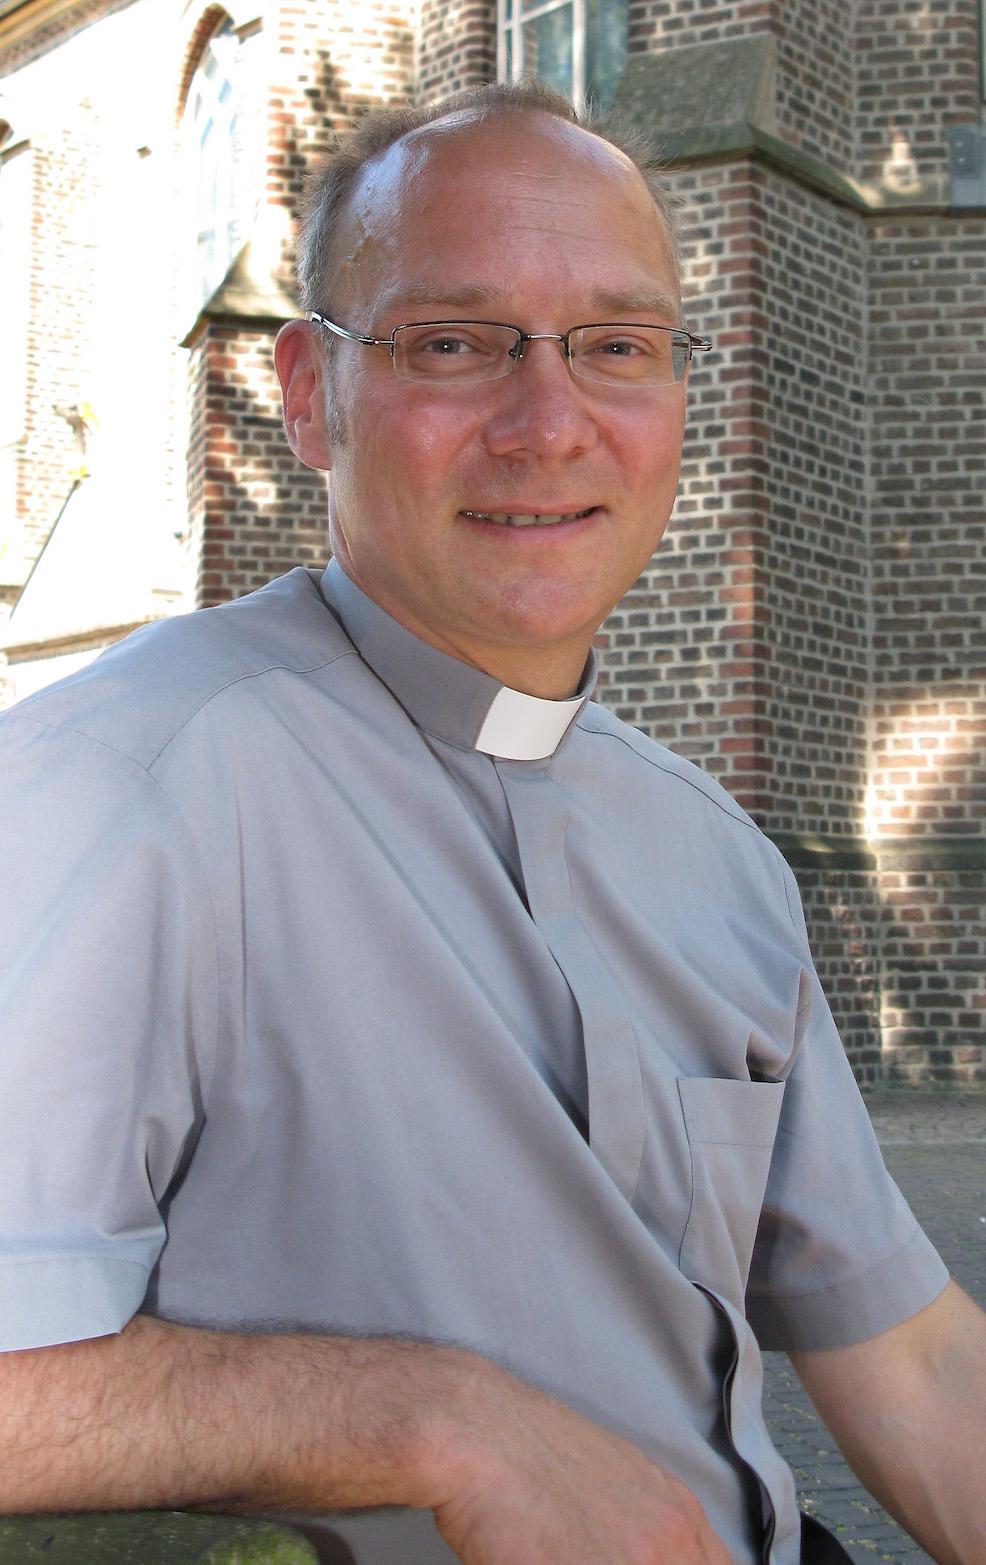 Pfarrer Marc Zimmermann leitet als Promotor den Prozess in der GdG Korschenbroich. (c) Garnet Manecke